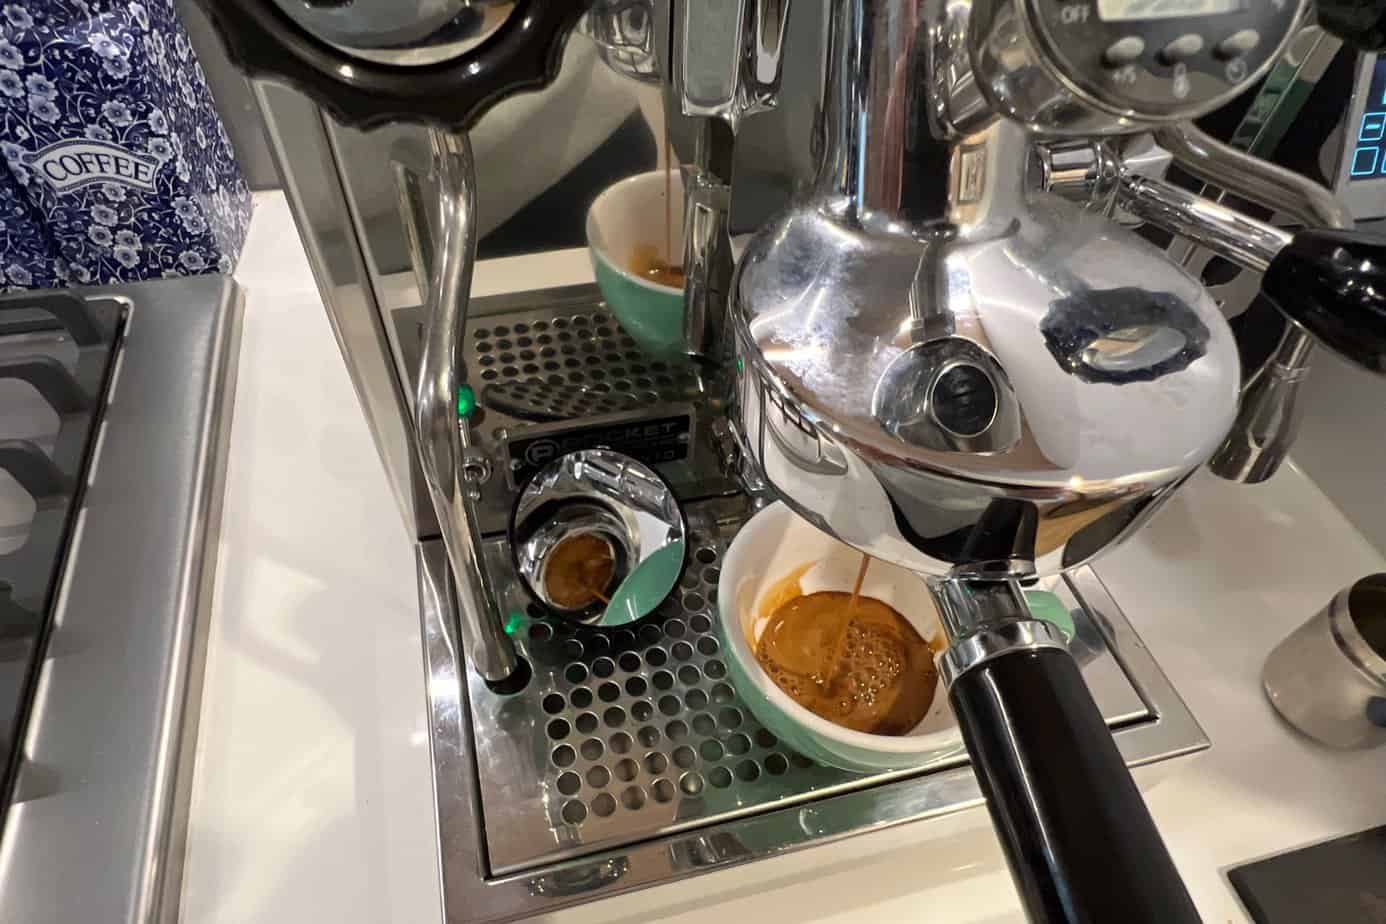 Espresso mirror showing extraction